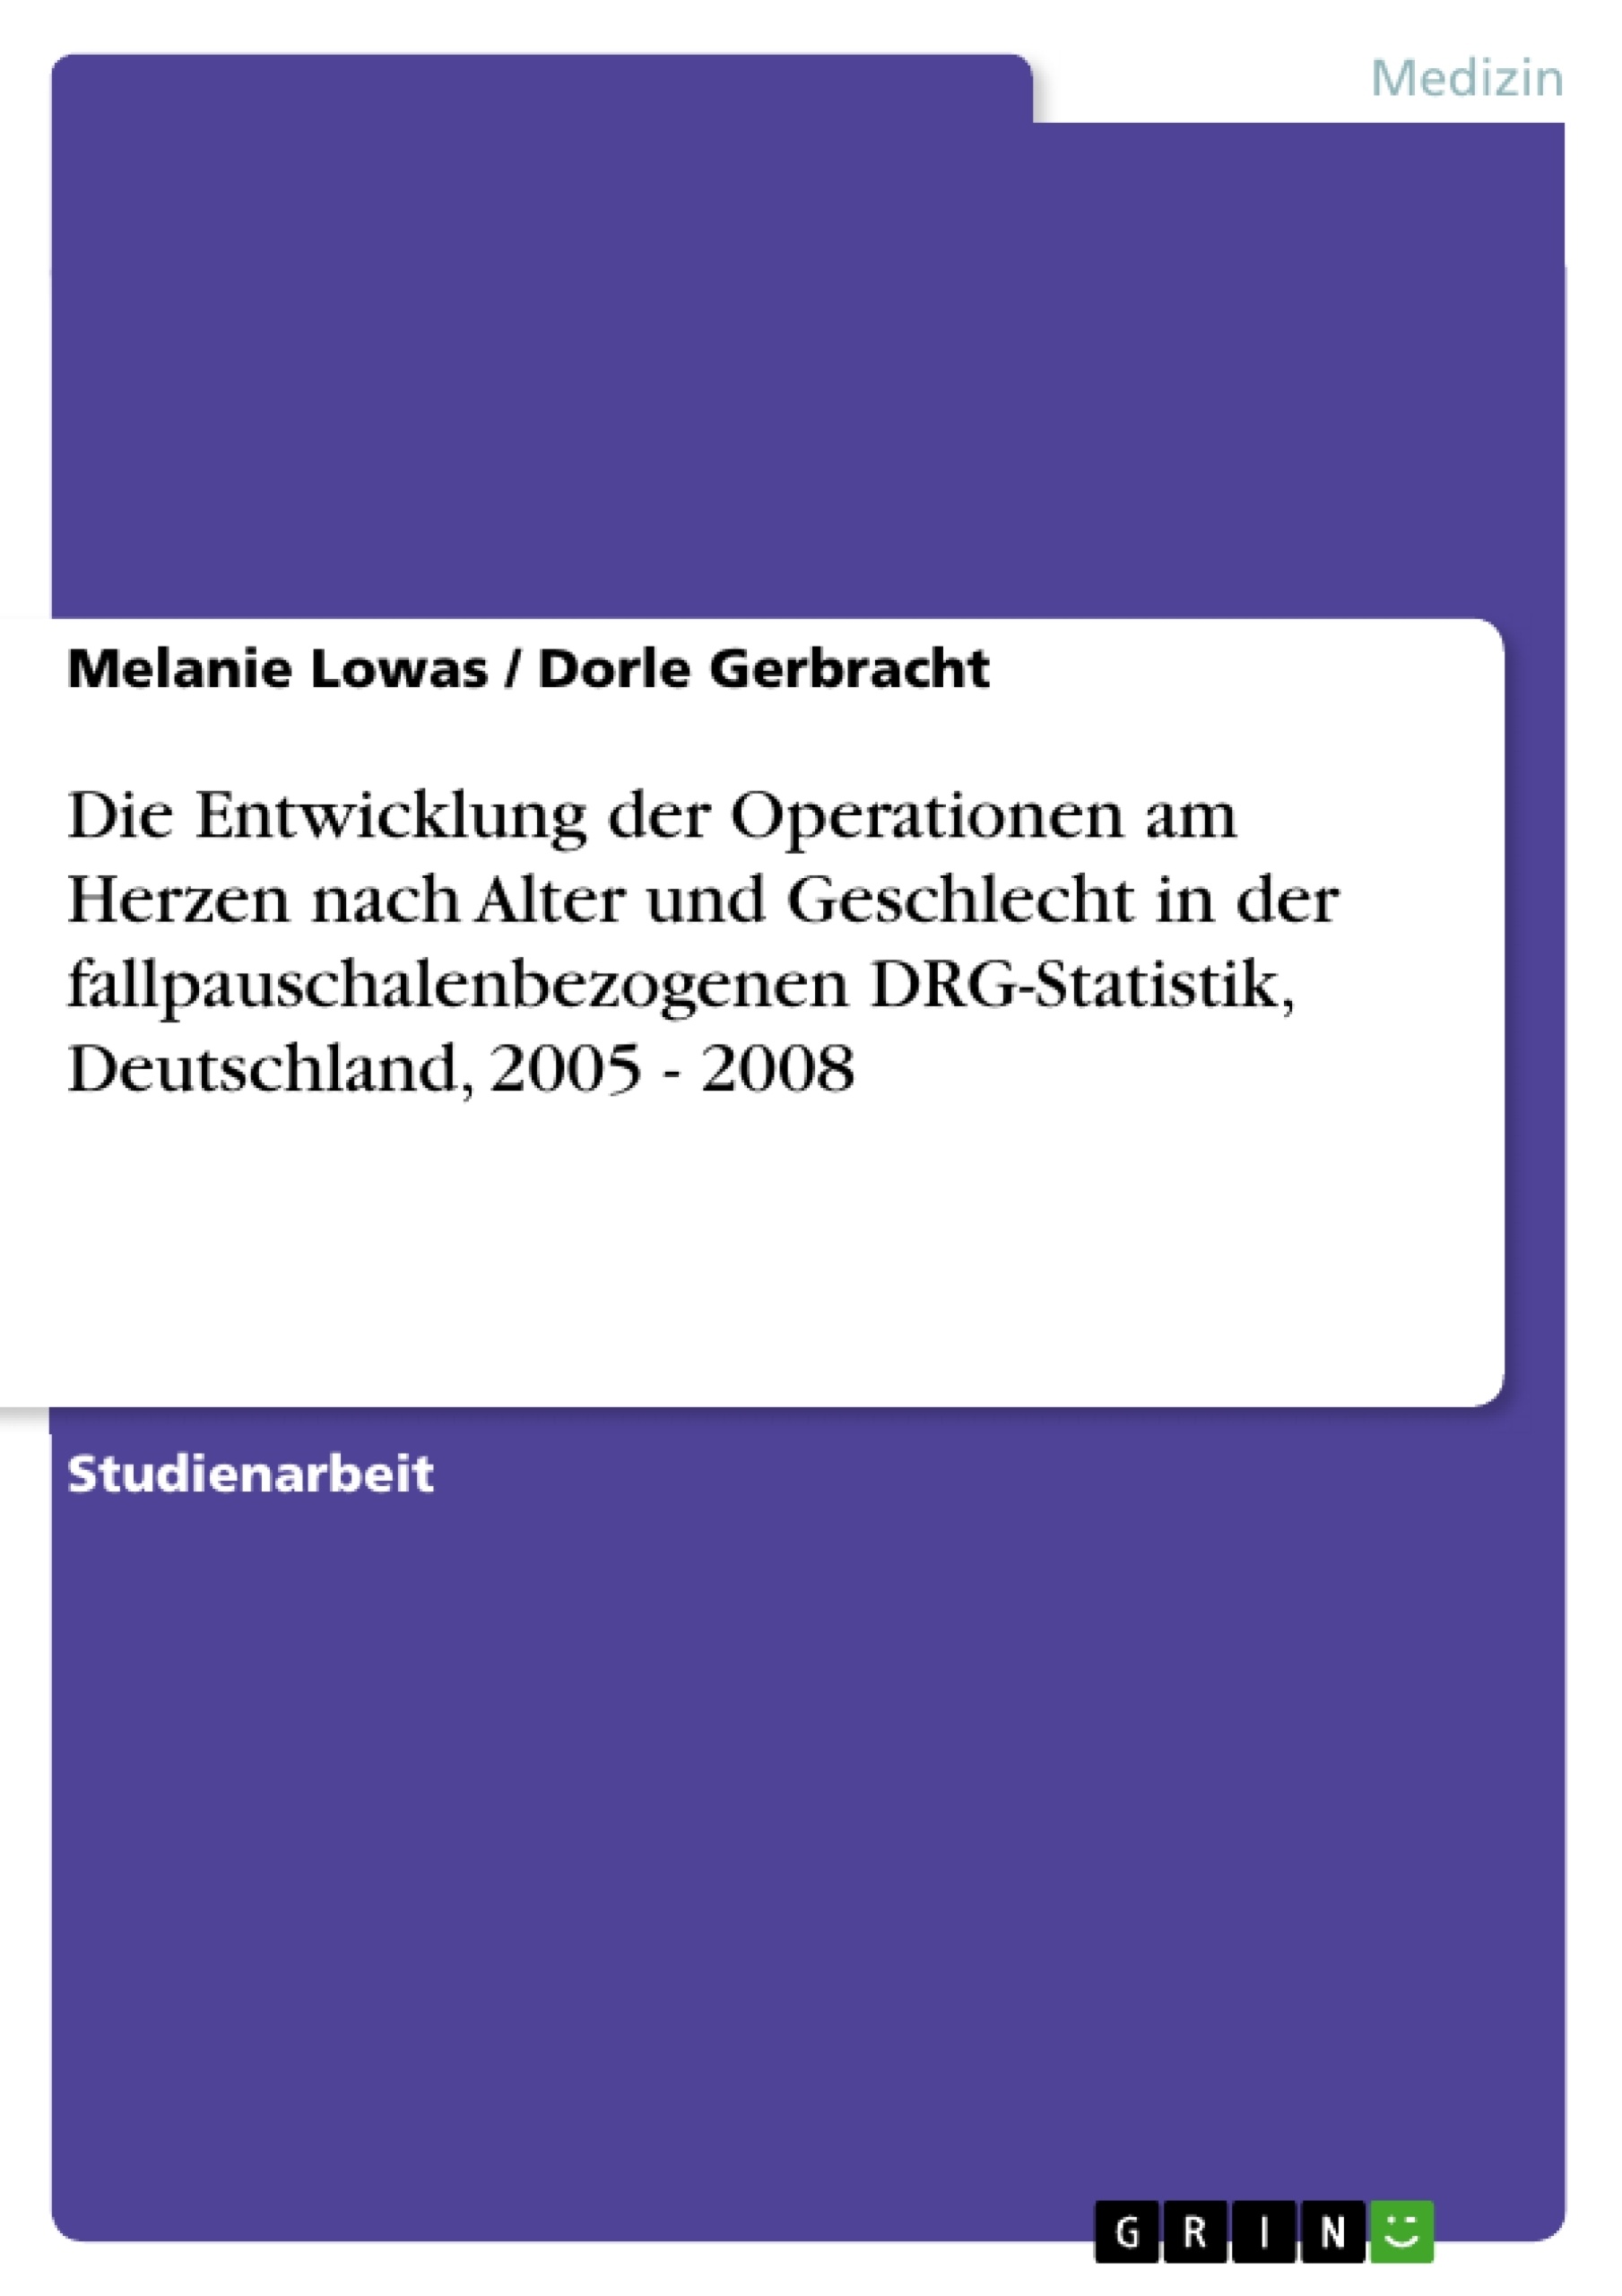 Title: Die Entwicklung der Operationen am Herzen nach Alter und Geschlecht in der fallpauschalenbezogenen DRG-Statistik, Deutschland, 2005 - 2008